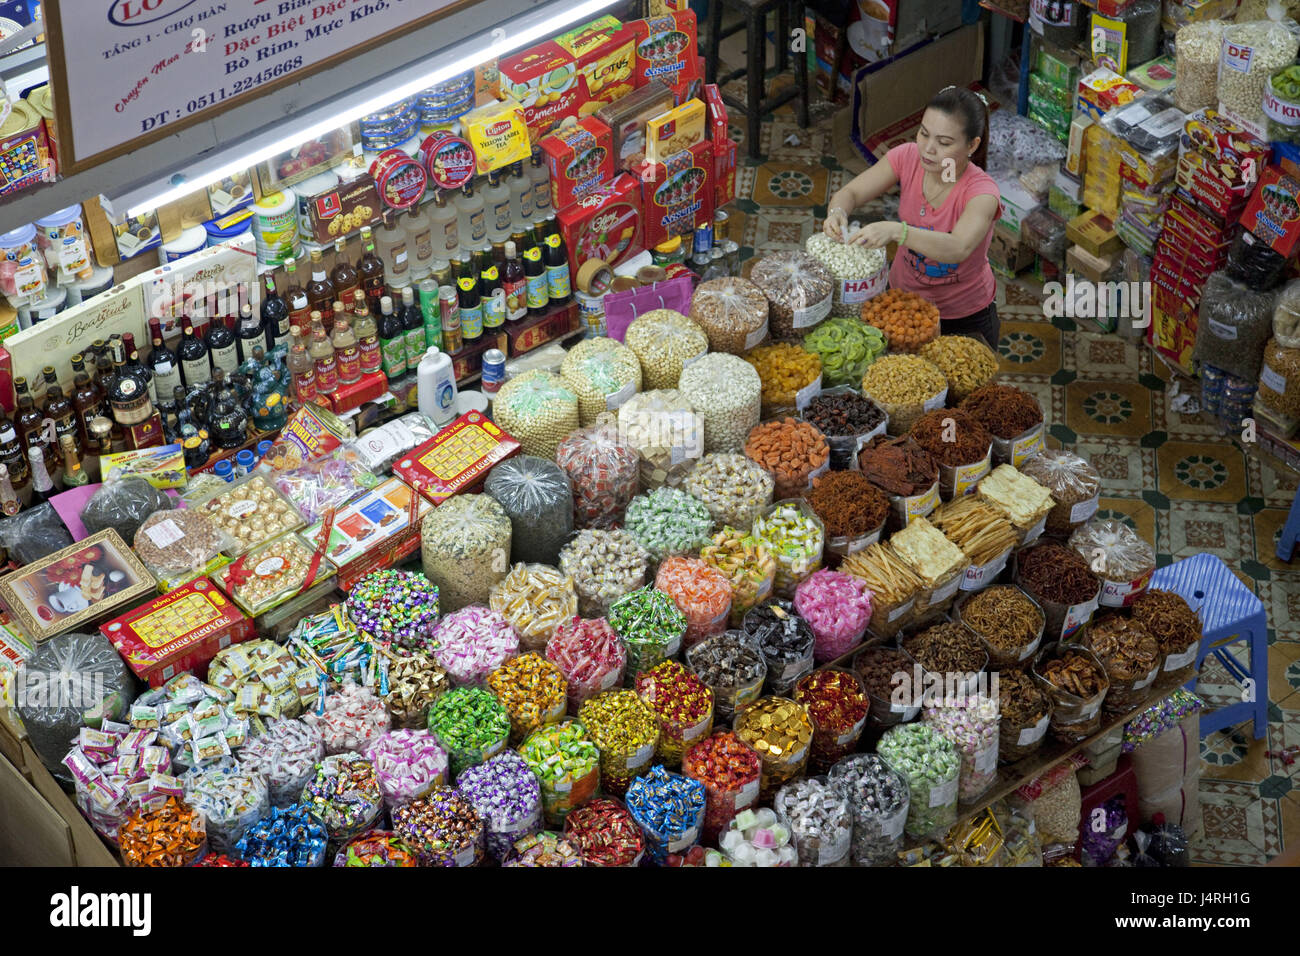 Vietnam, Danang, Han Markt, sweet shop, Stock Photo